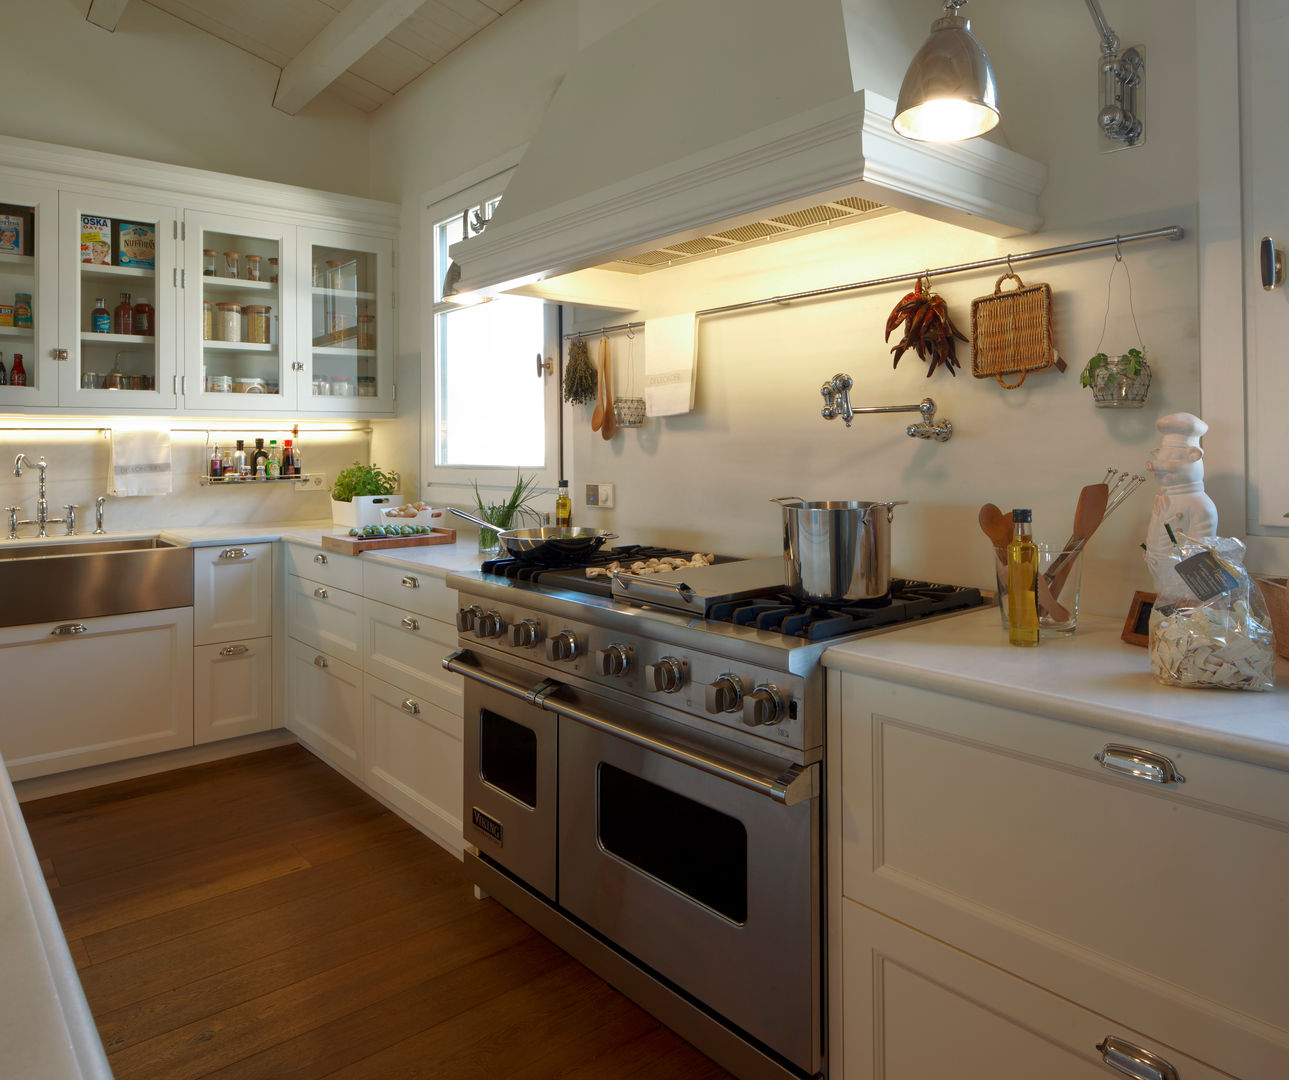 Cocina de estilo americano , DEULONDER arquitectura domestica DEULONDER arquitectura domestica Kitchen